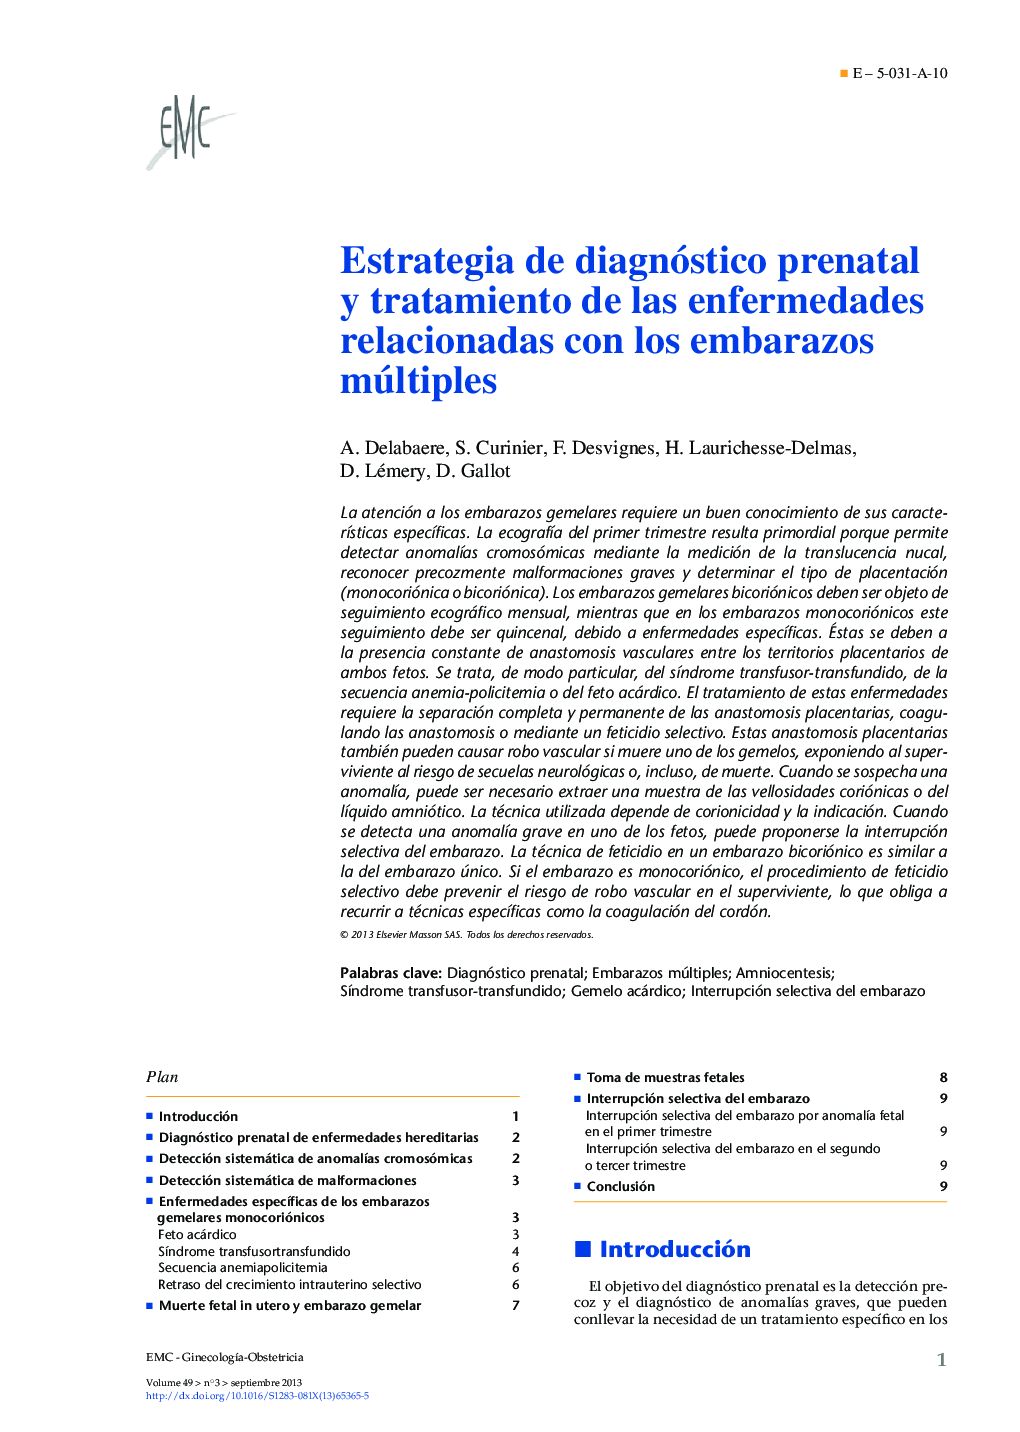 Estrategia de diagnóstico prenatal y tratamiento de las enfermedades relacionadas con los embarazos múltiples